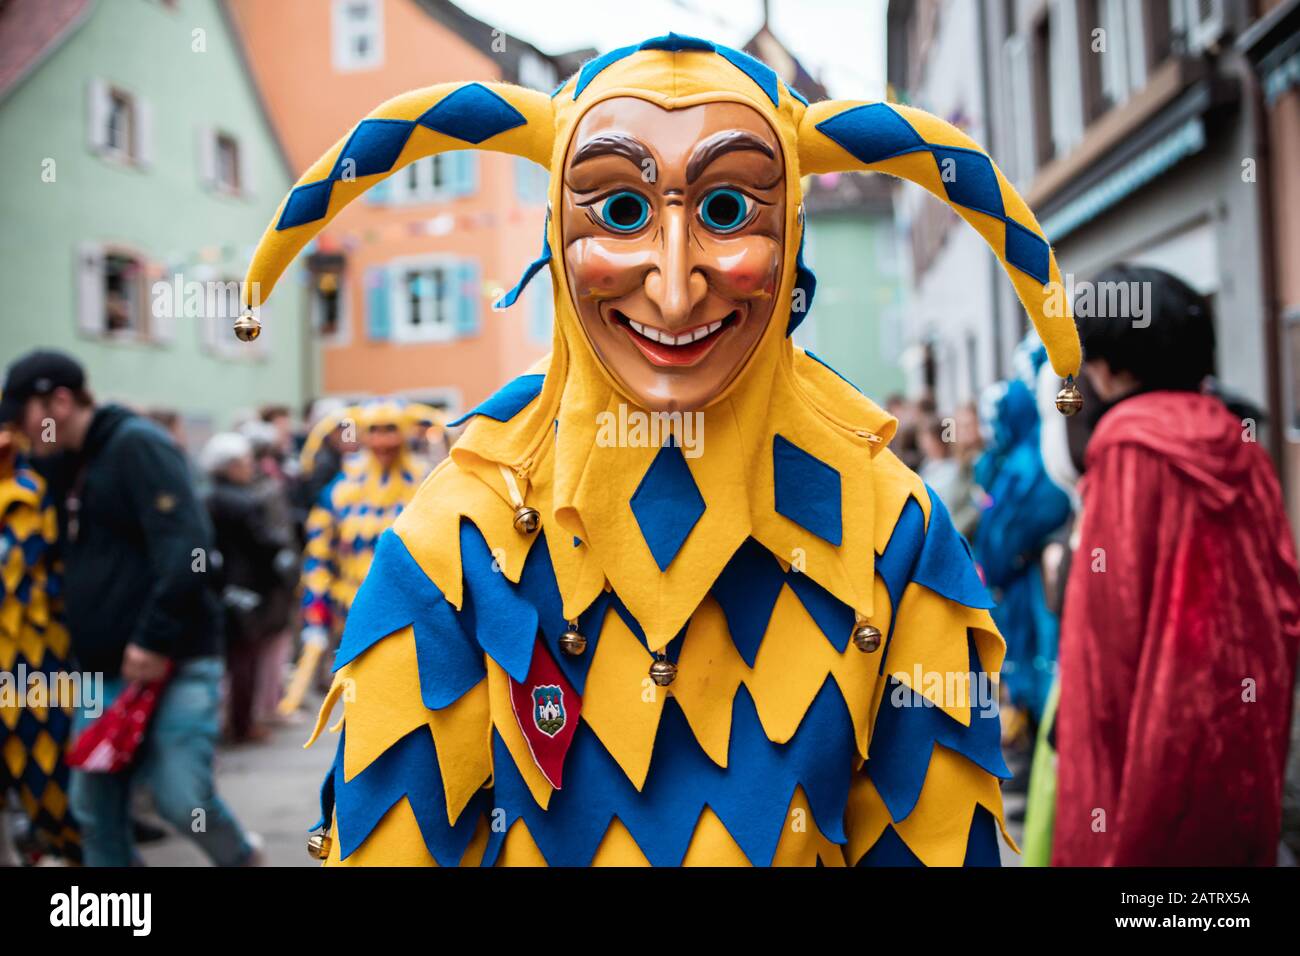 Bajass aus Waldkirchen - schöne Narrenfigur in gelb-blauer Robe mit  kuriosem Ausdruck auf dem Karnevalsumzug in Staufen, Süddeutschland  Stockfotografie - Alamy